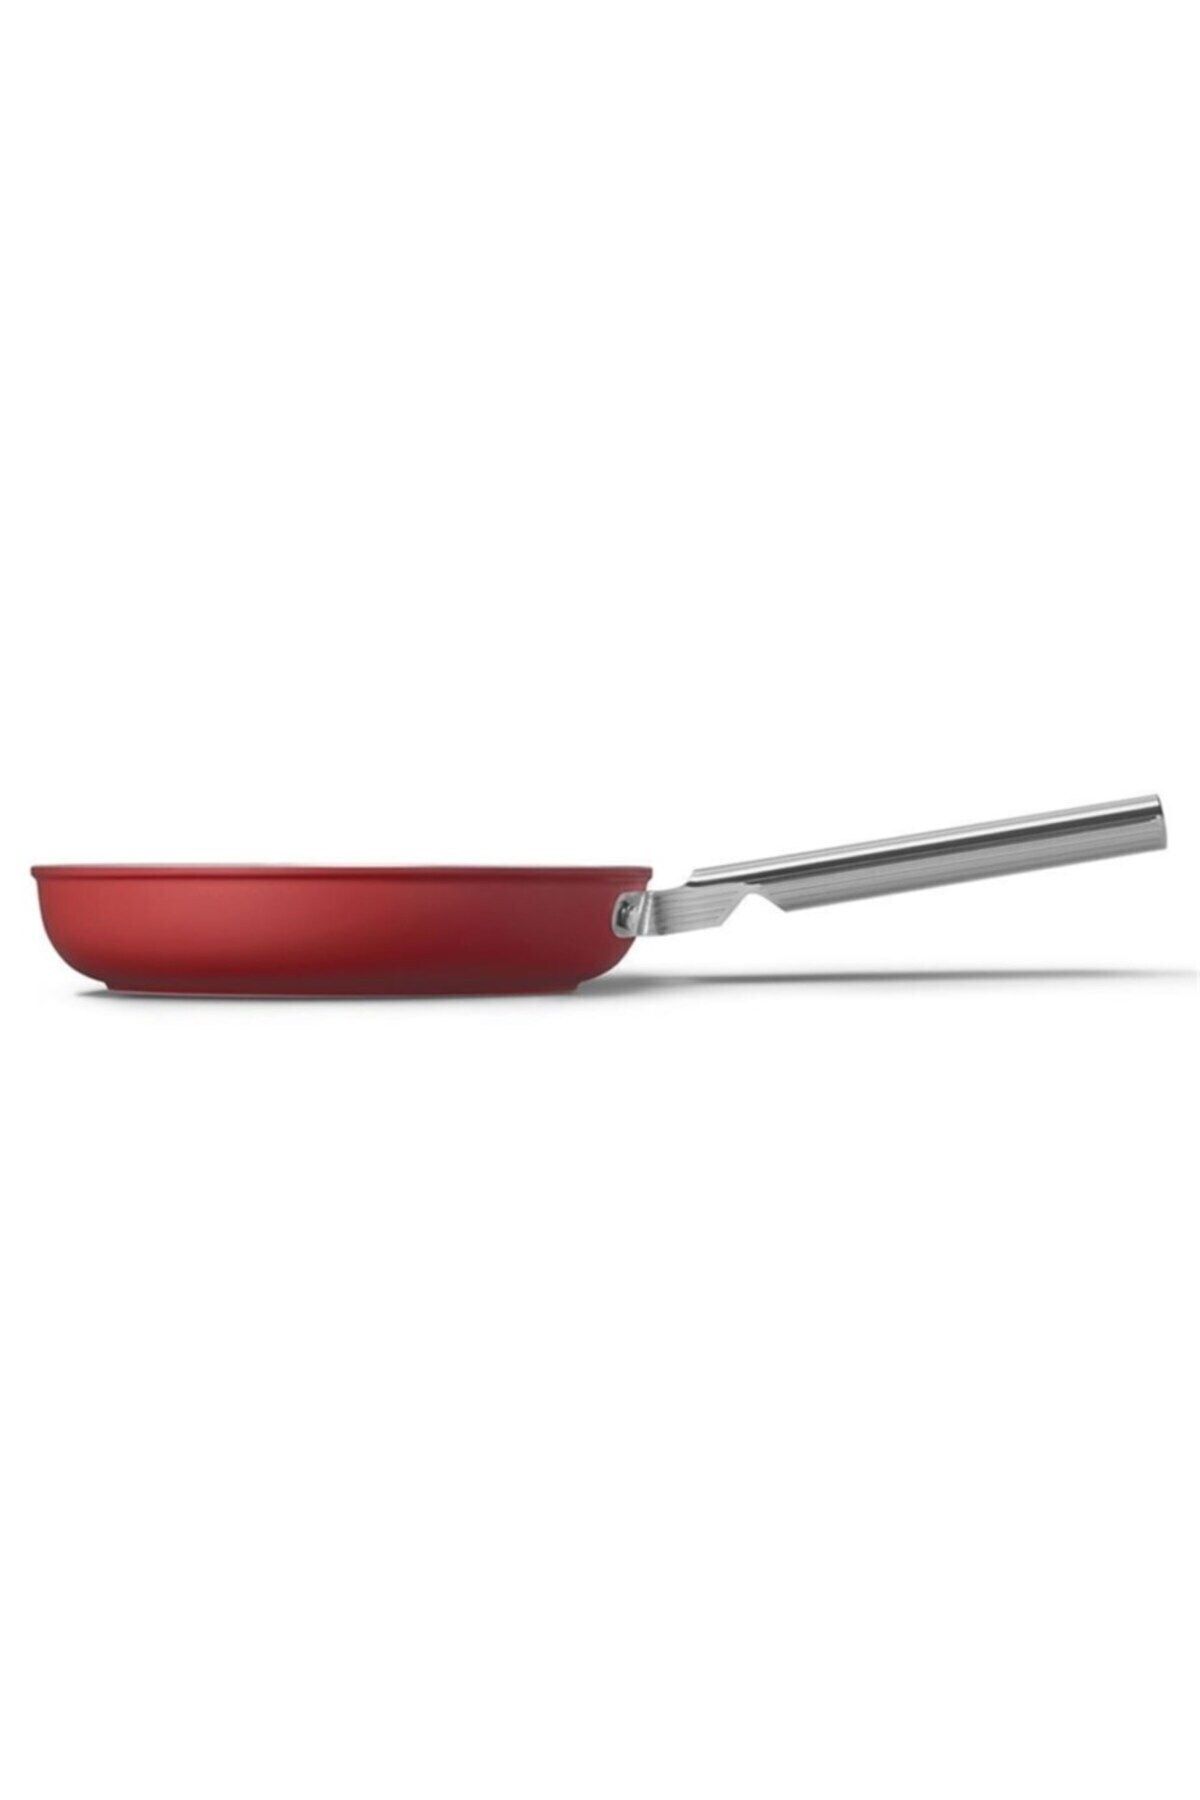 Smeg Cookware 50's Style Kırmızı Tava 24 Cm